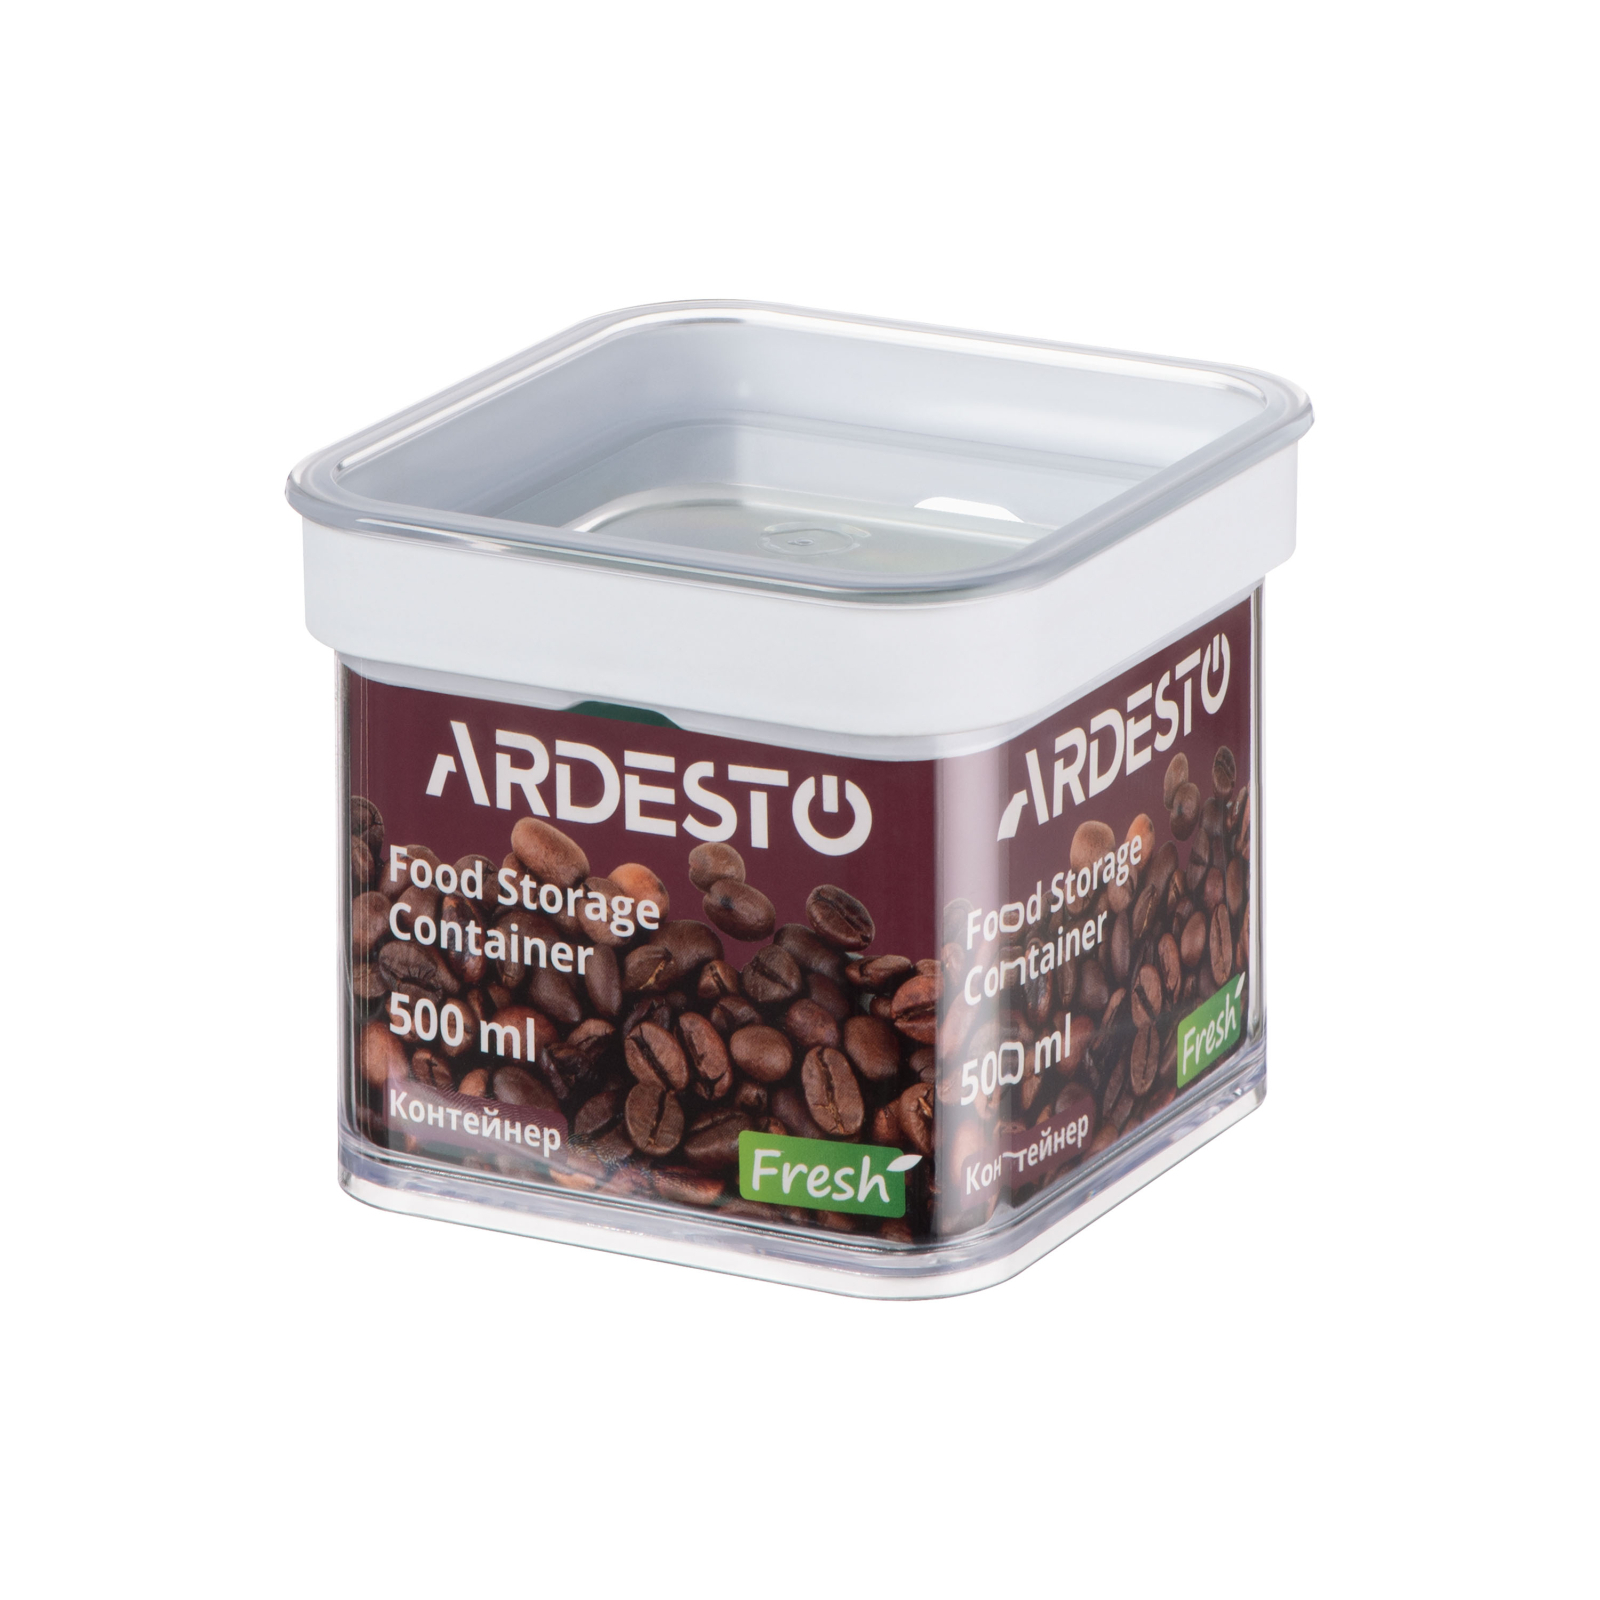 Харчовий контейнер Ardesto Fresh Quadrate 1.5 л (AR4115FT)